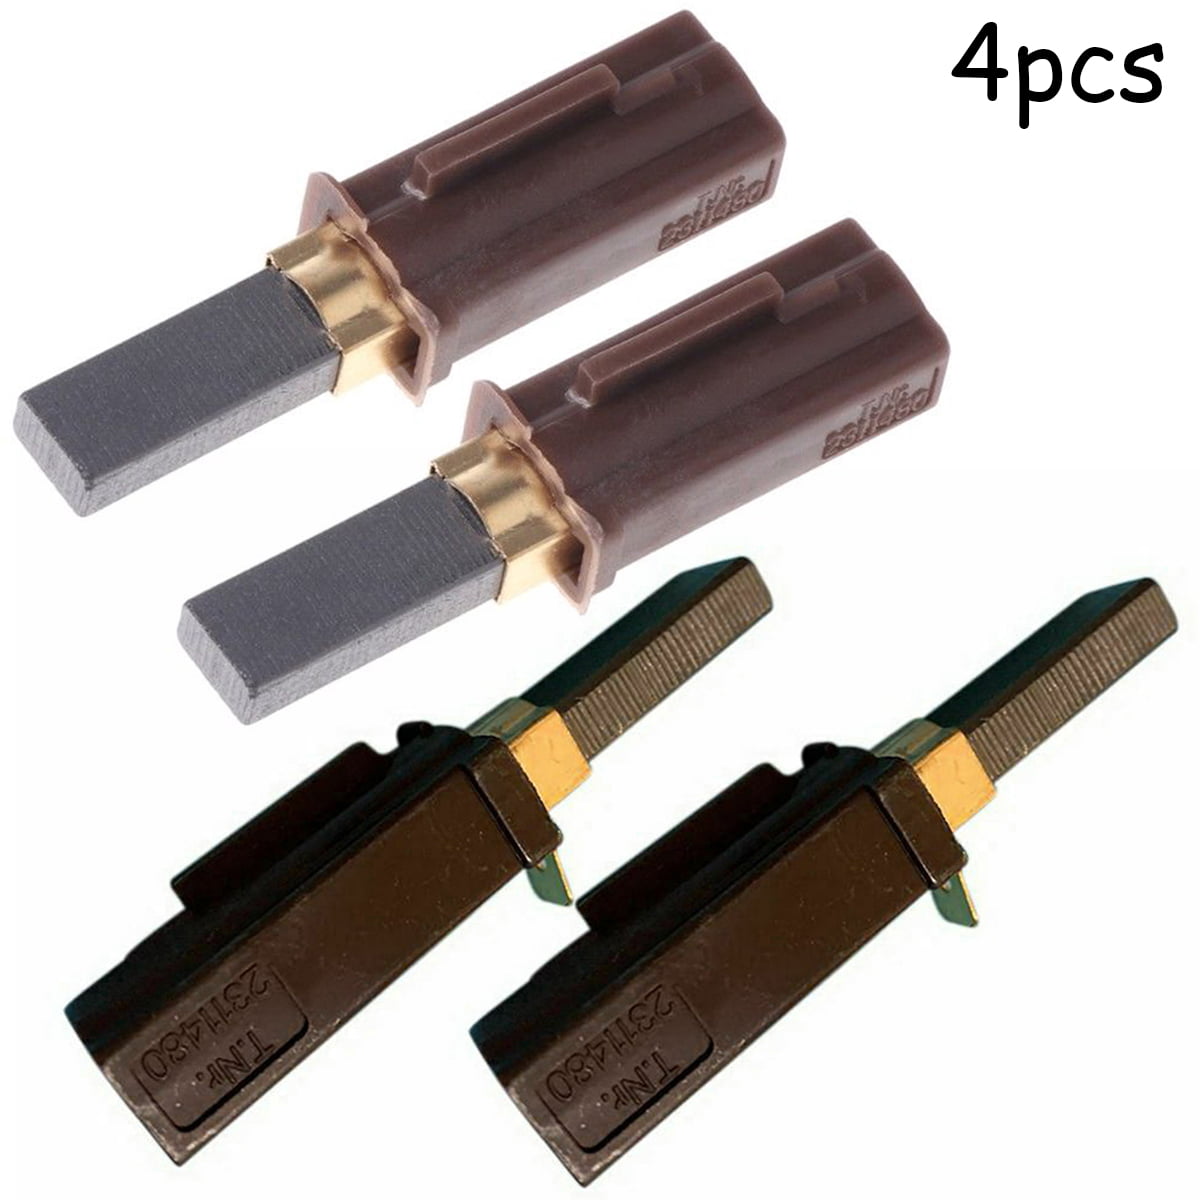 4 PCS Motor Carbon Brushes For Ametek Lamb Vacuum Cleaner 2311480 33326-1/333261 